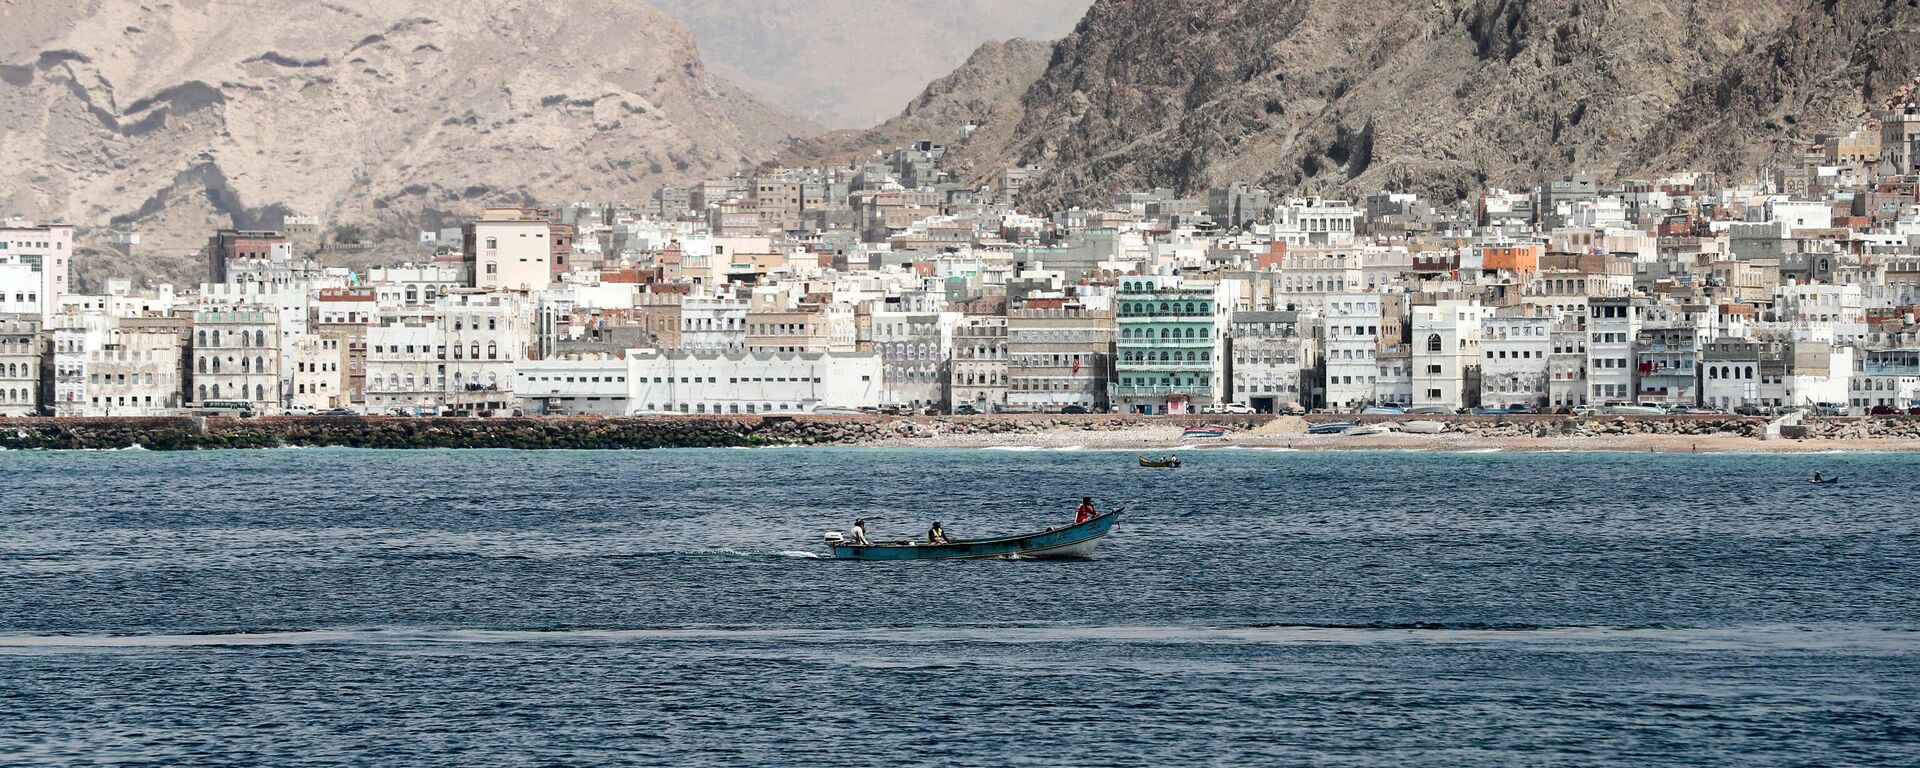 Al Mukalla (Yemen), ciudad en la que se encuentra retenido el navío 'Cobija' - Sputnik Mundo, 1920, 03.08.2021